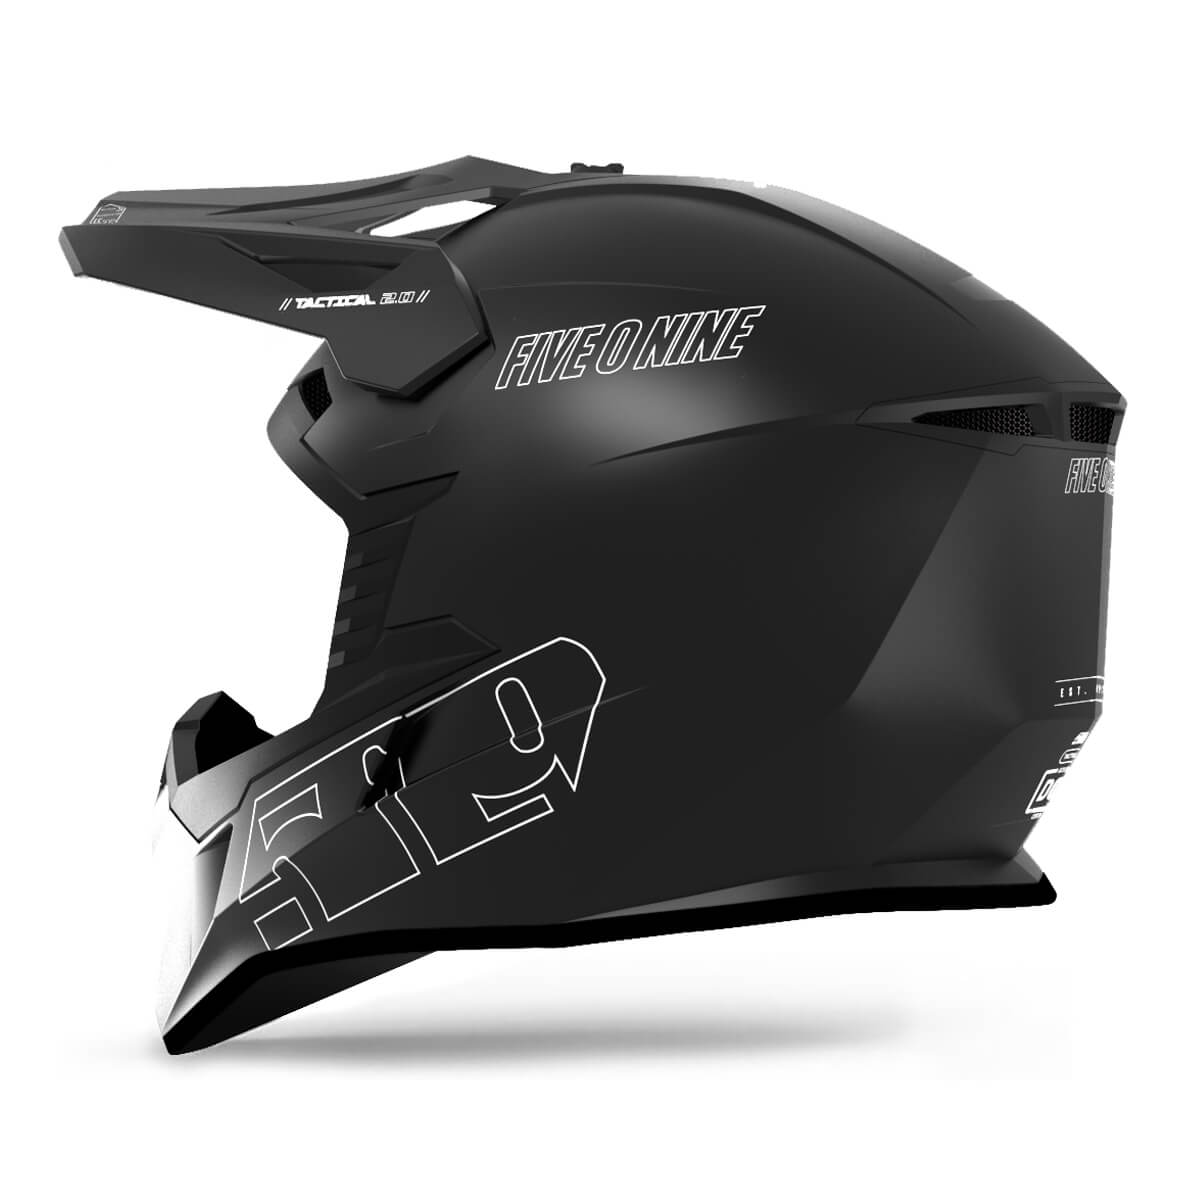 Tactical 2.0 Enduro Helmet